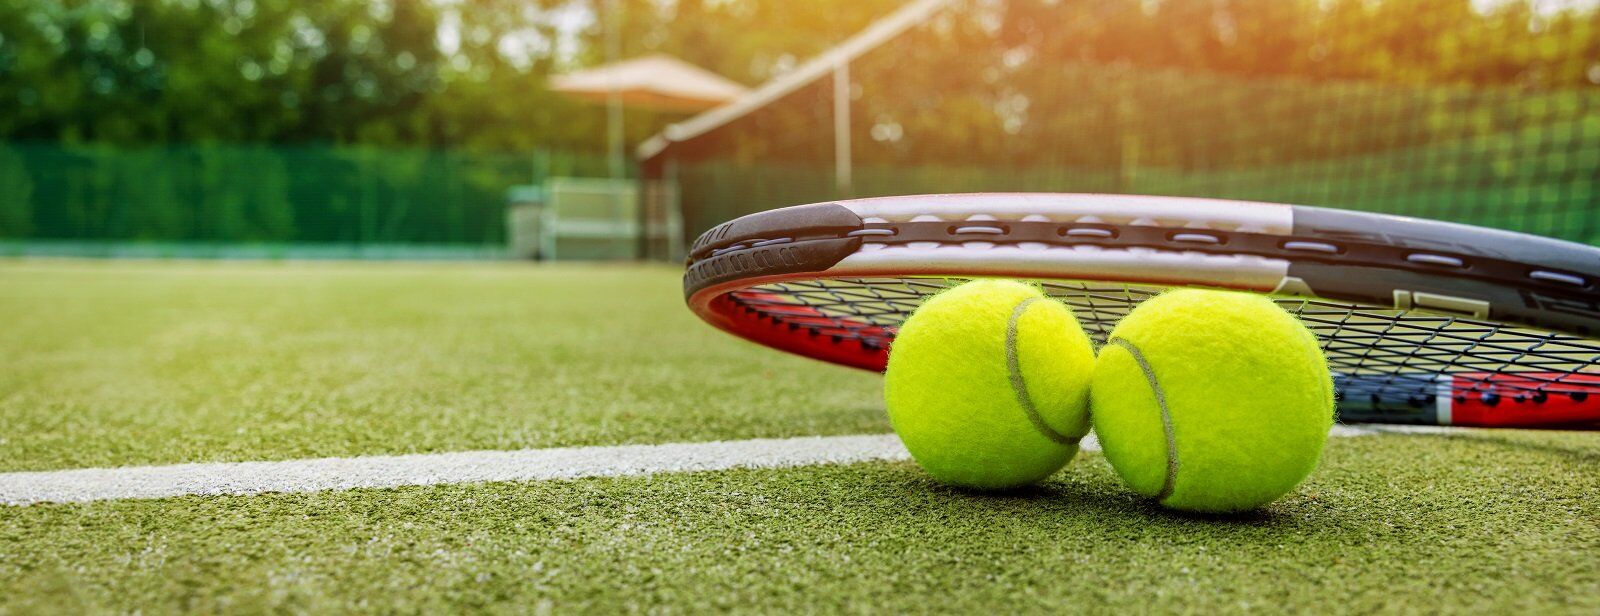 Tennis racket and ball on green grass court